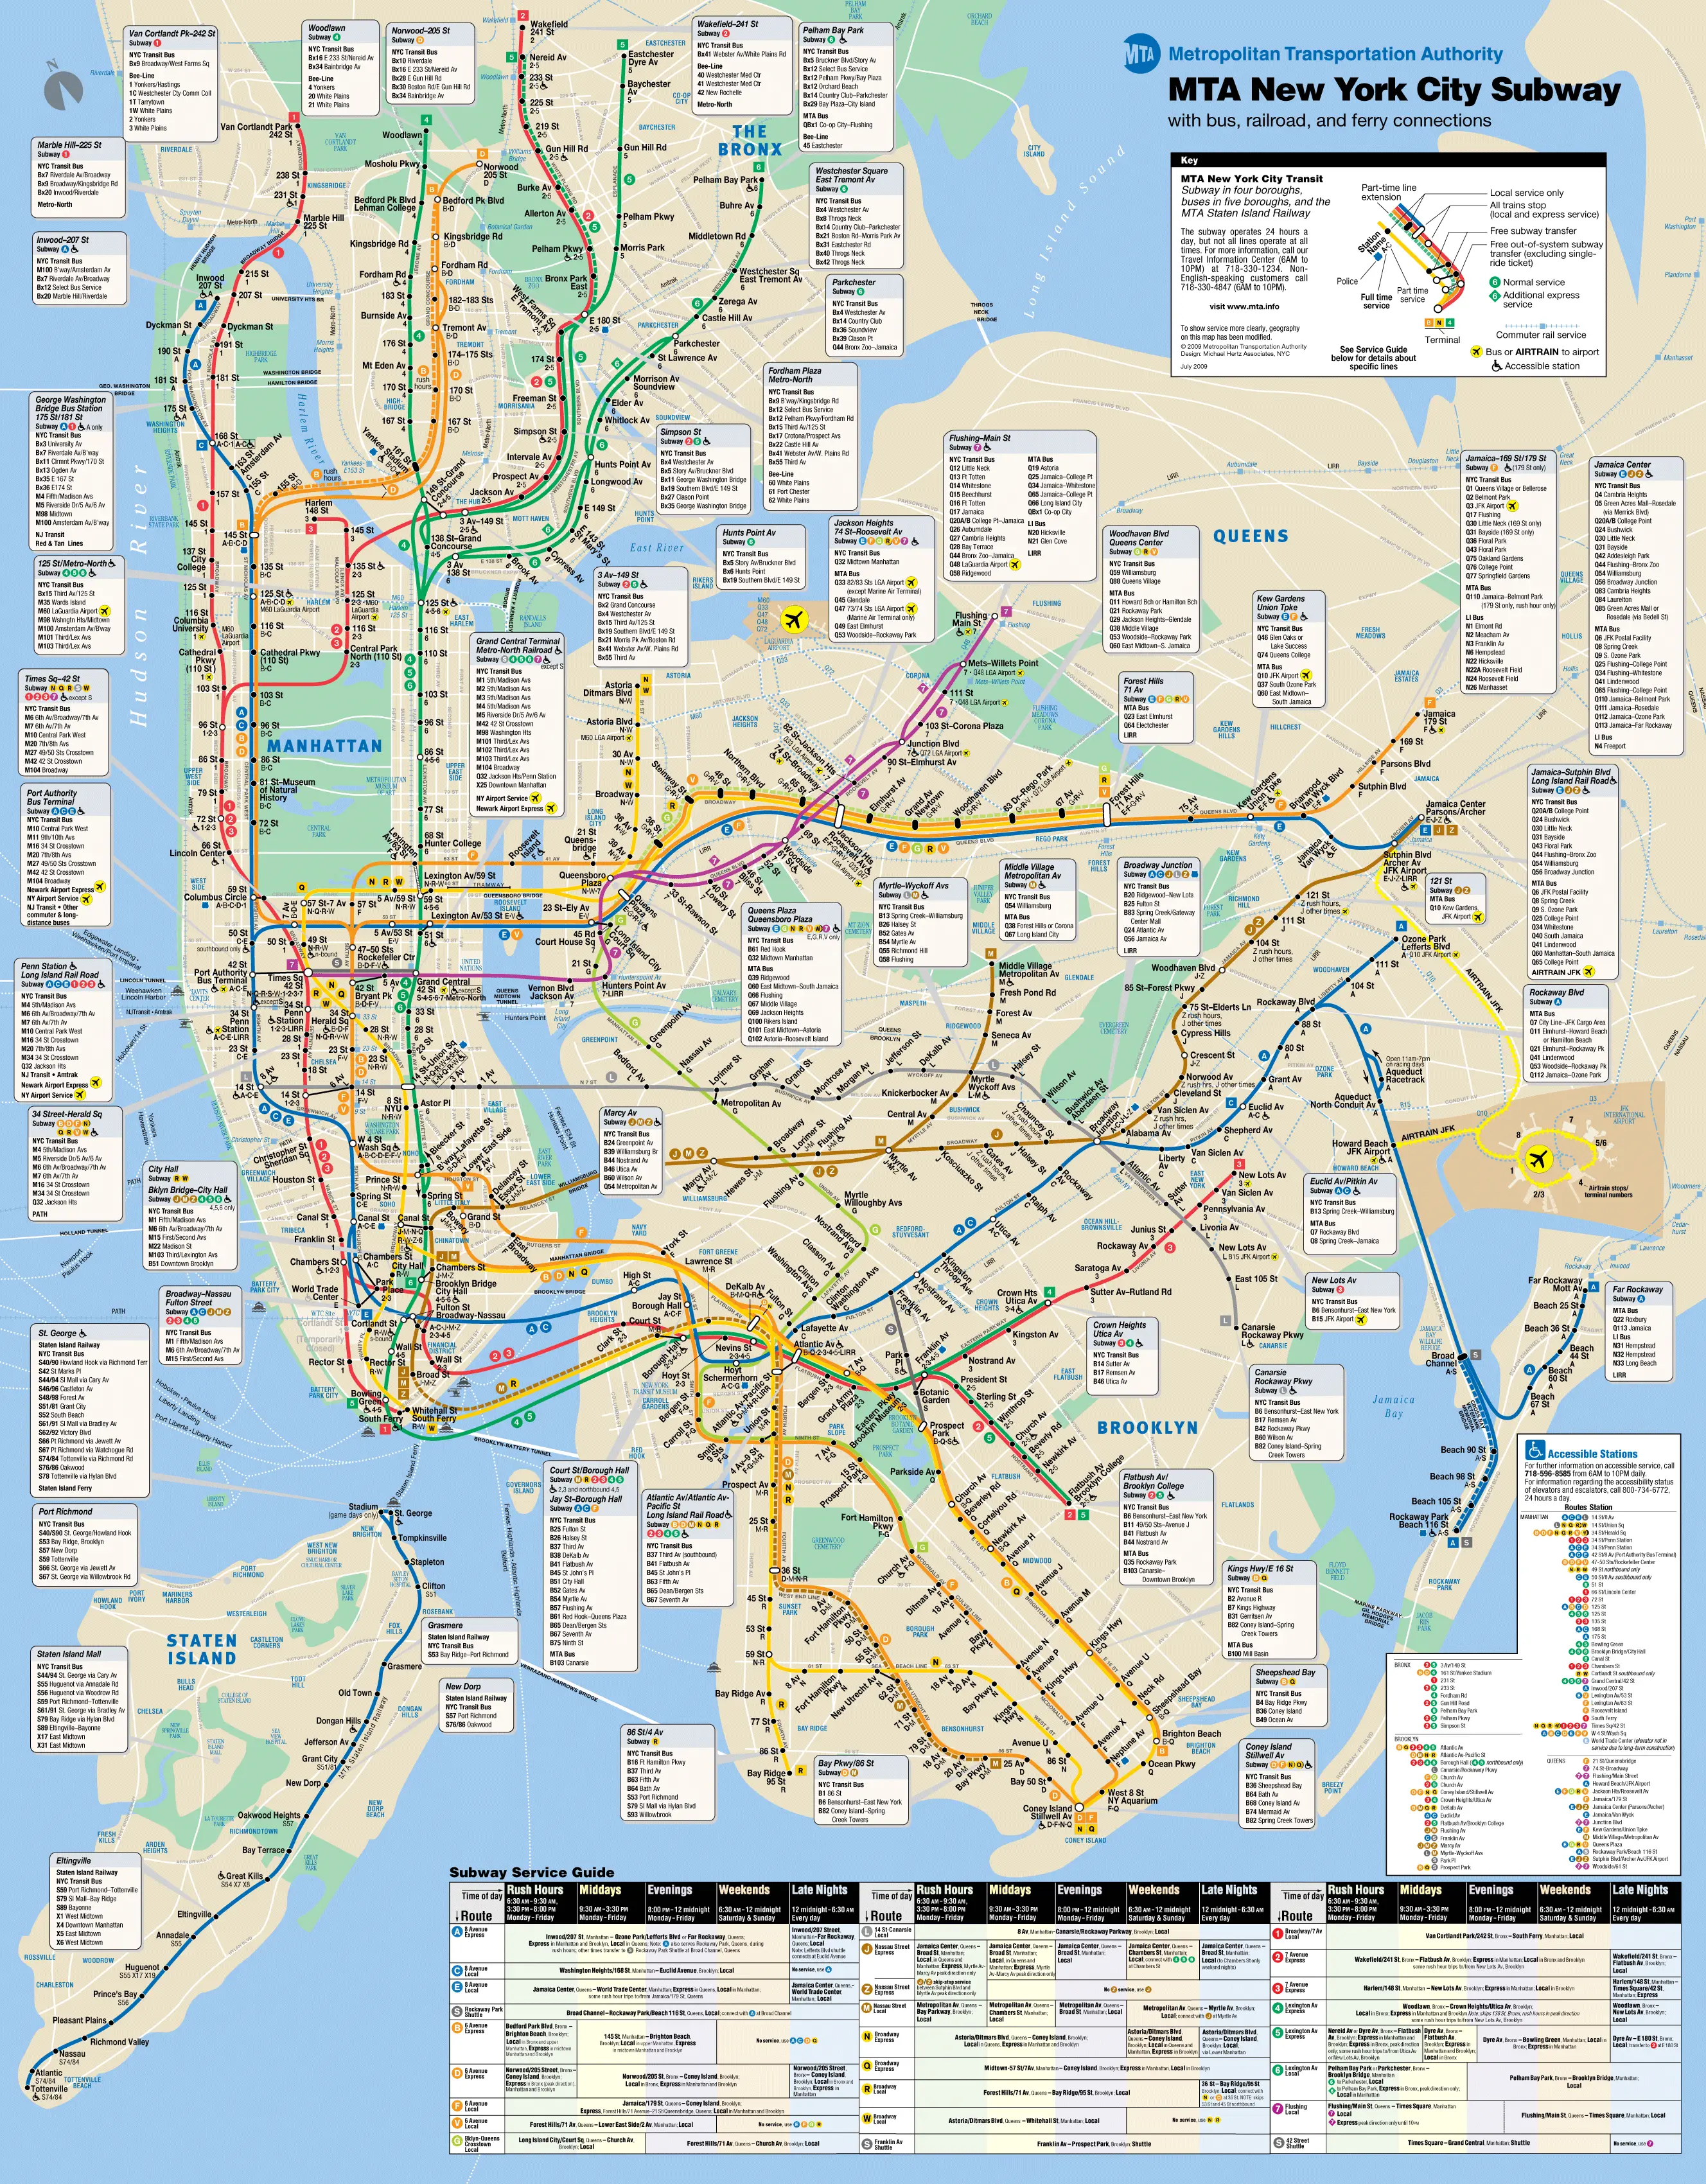 New York City Subway Map (metro)